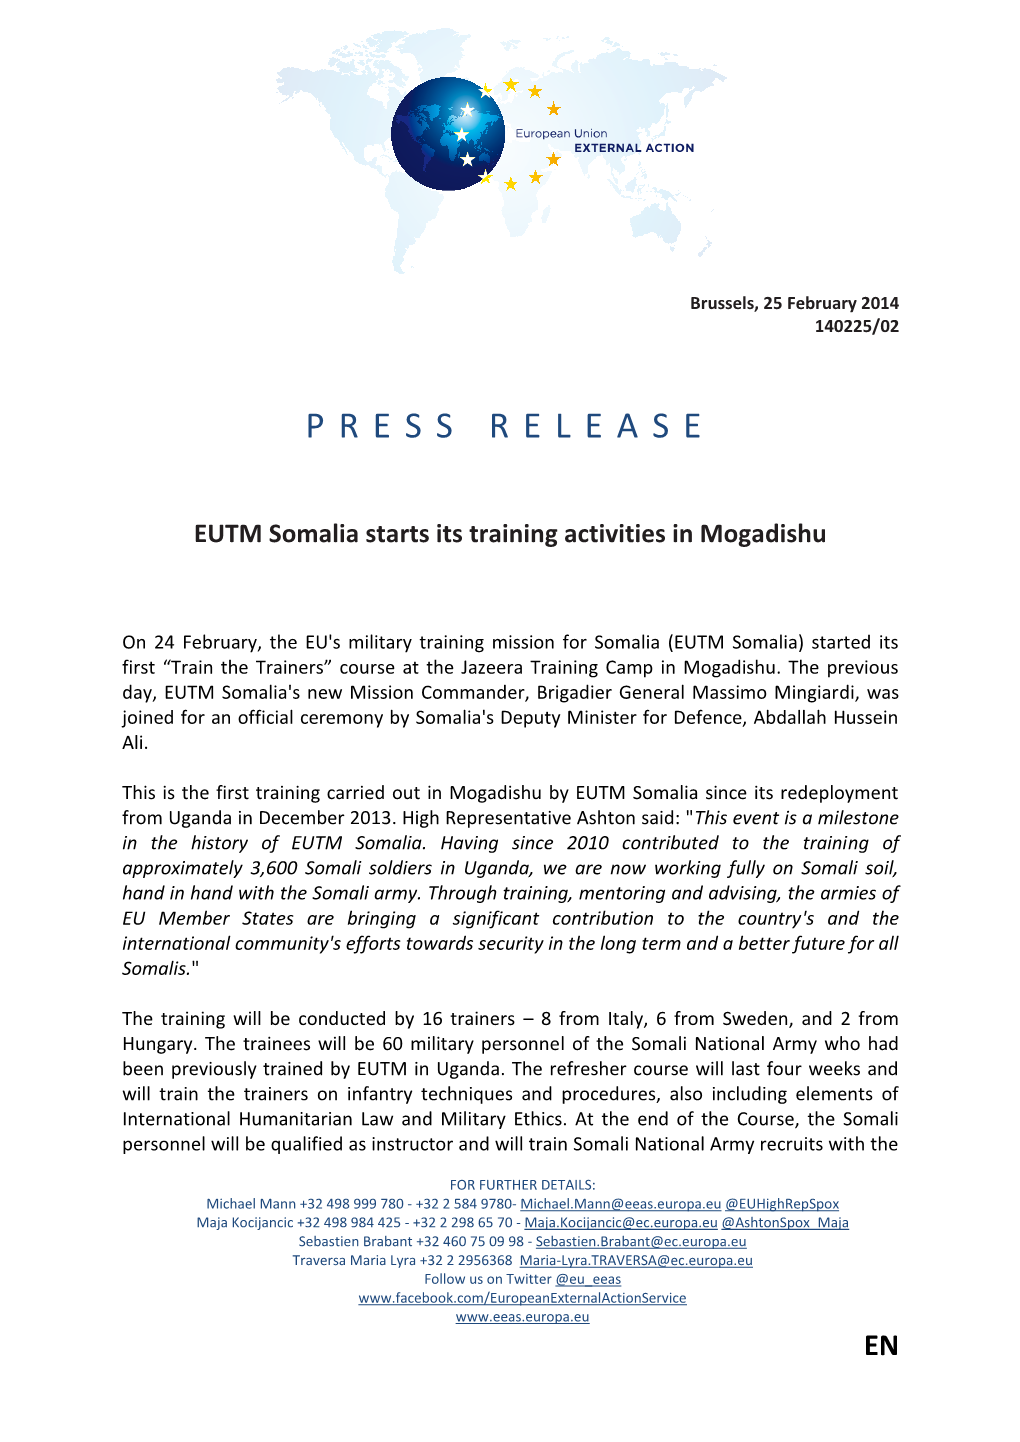 EUTM Somalia Starts Its Training Activities in Mogadishu